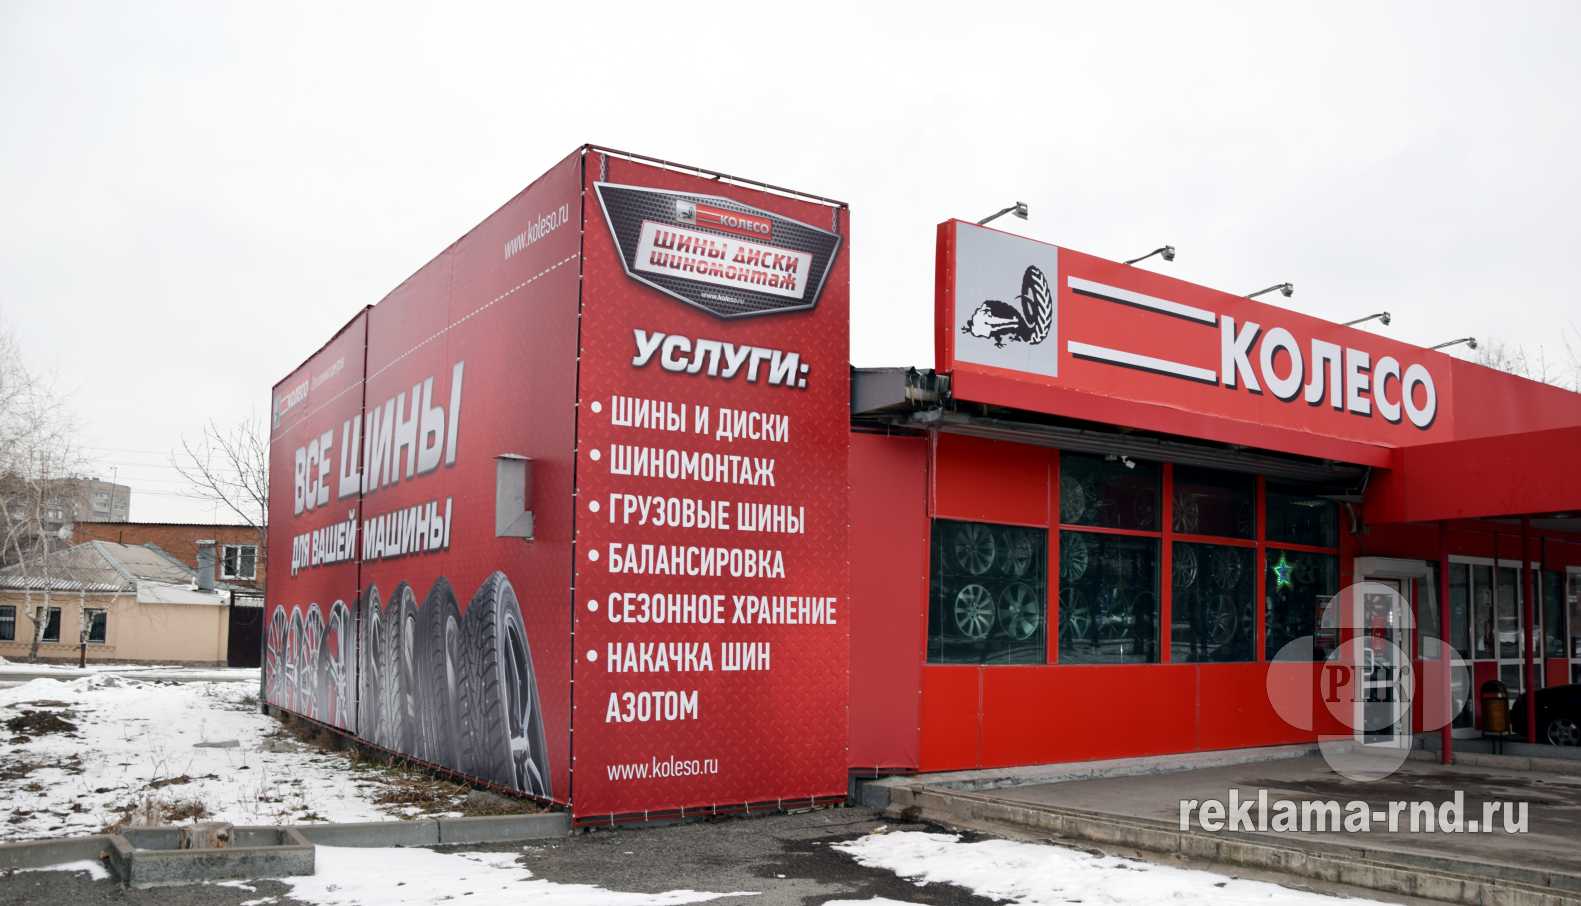 Выполнен заказ на изготовление наружной рекламы из баннерной ткани и оформление фасада магазина в Ростове-на-Дону.